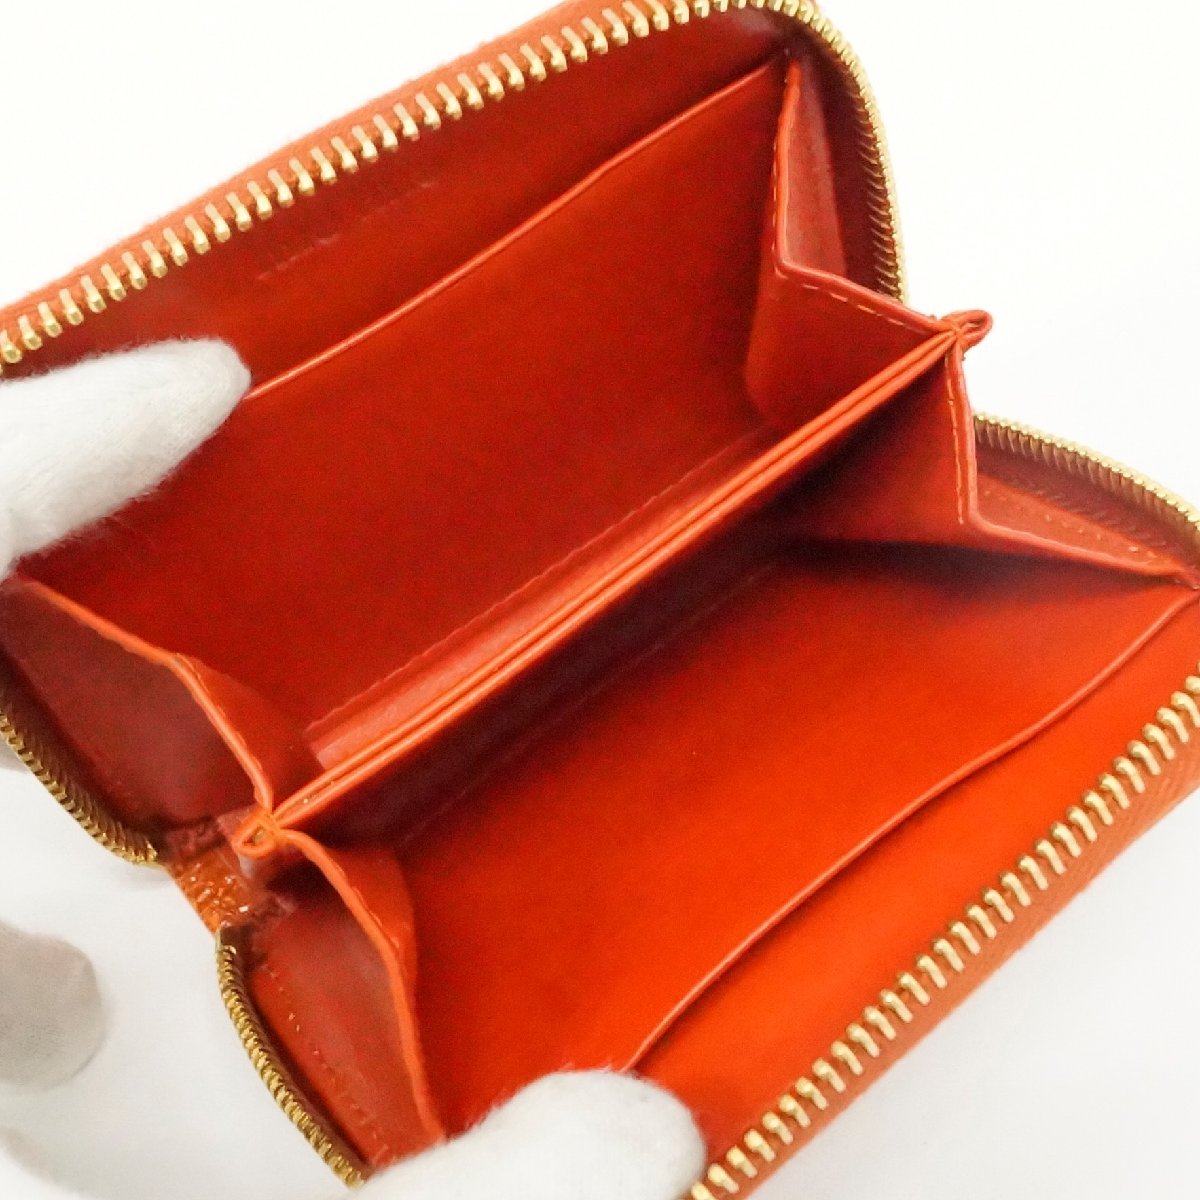 中古 ミュウミュウ miu miu コインケース 財布 オレンジ ウォレット 型押し レザー ラウンドファスナー_画像3